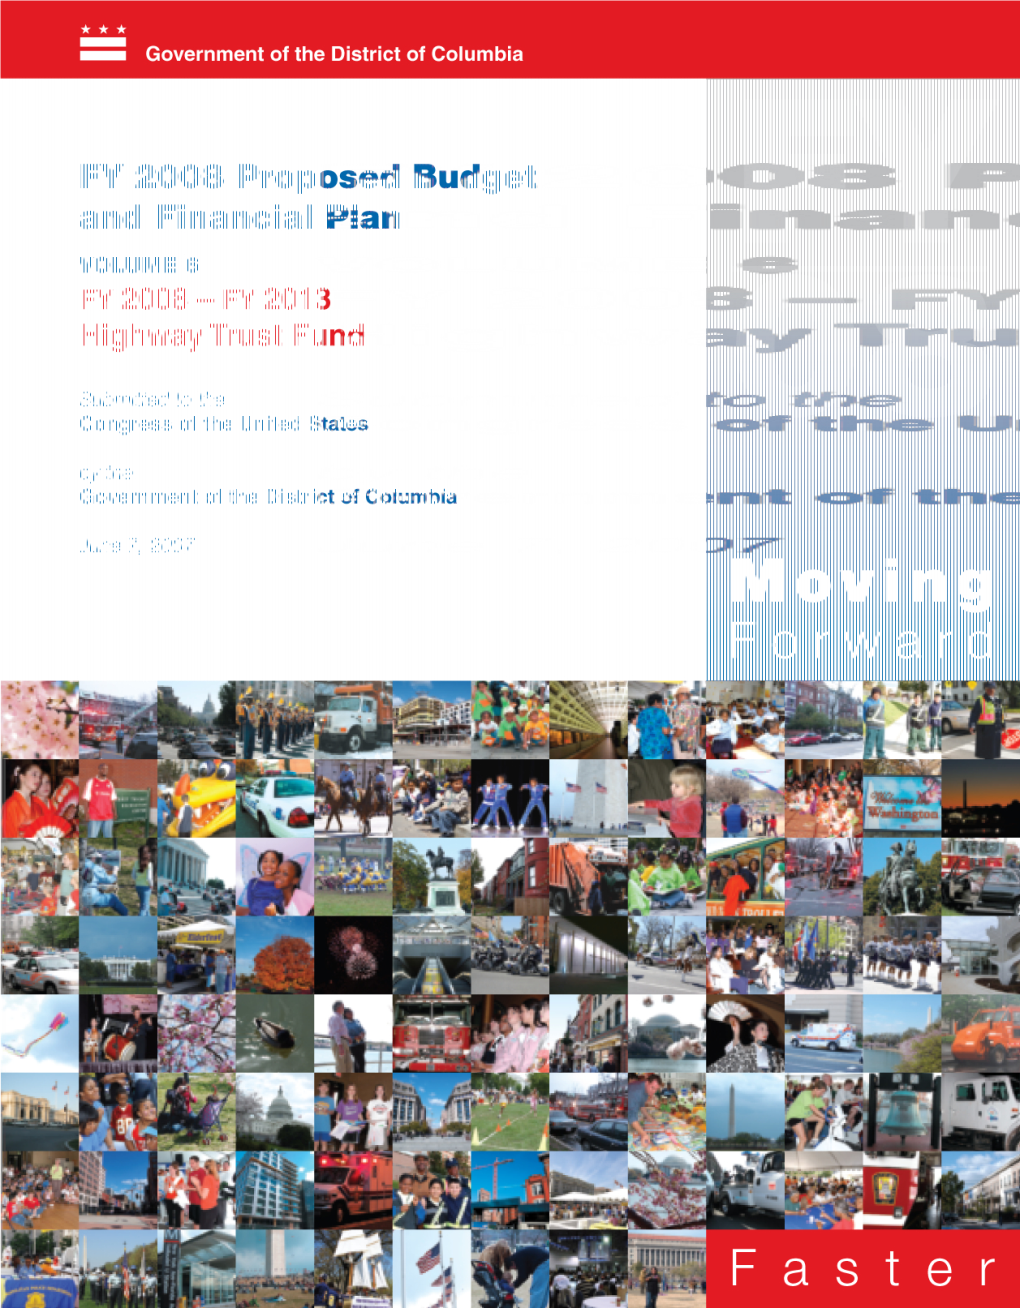 Volume 6 FY 2008 - FY 2013 Highway Trust Fund